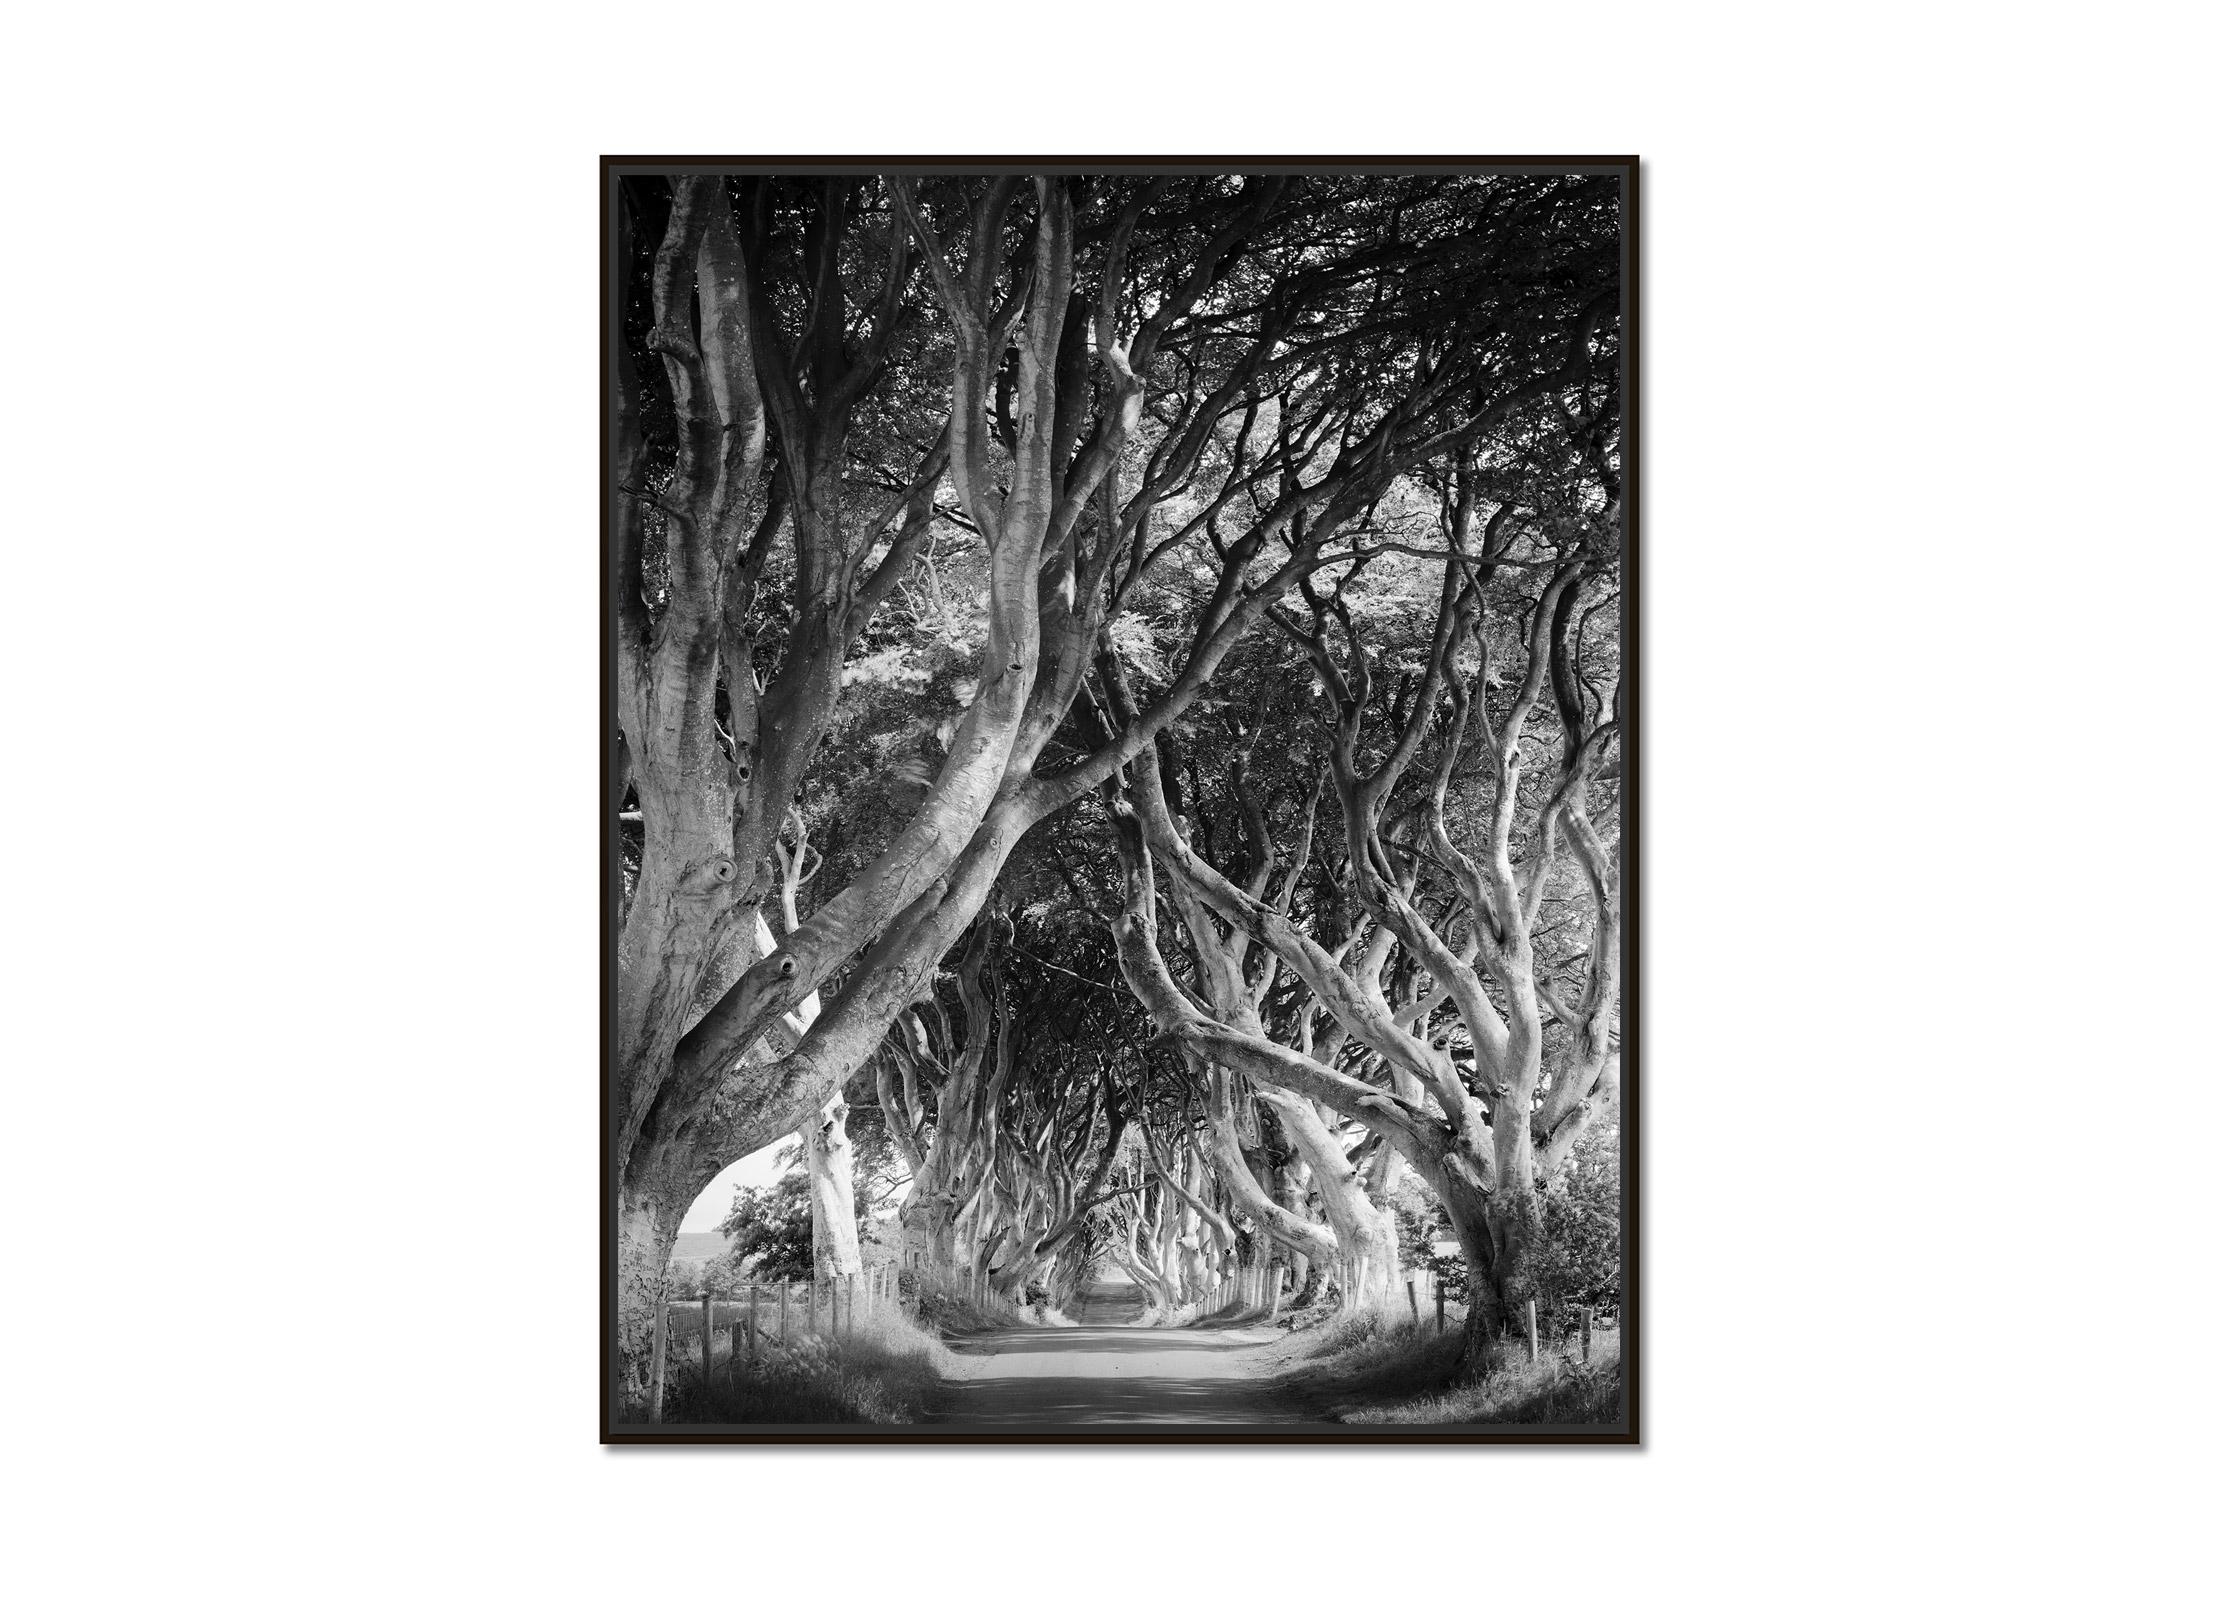 Dunkle Hölzer, Baumallee, mystische Wälder, Schwarz-Weiß-Landschaftsfotografie – Photograph von Gerald Berghammer